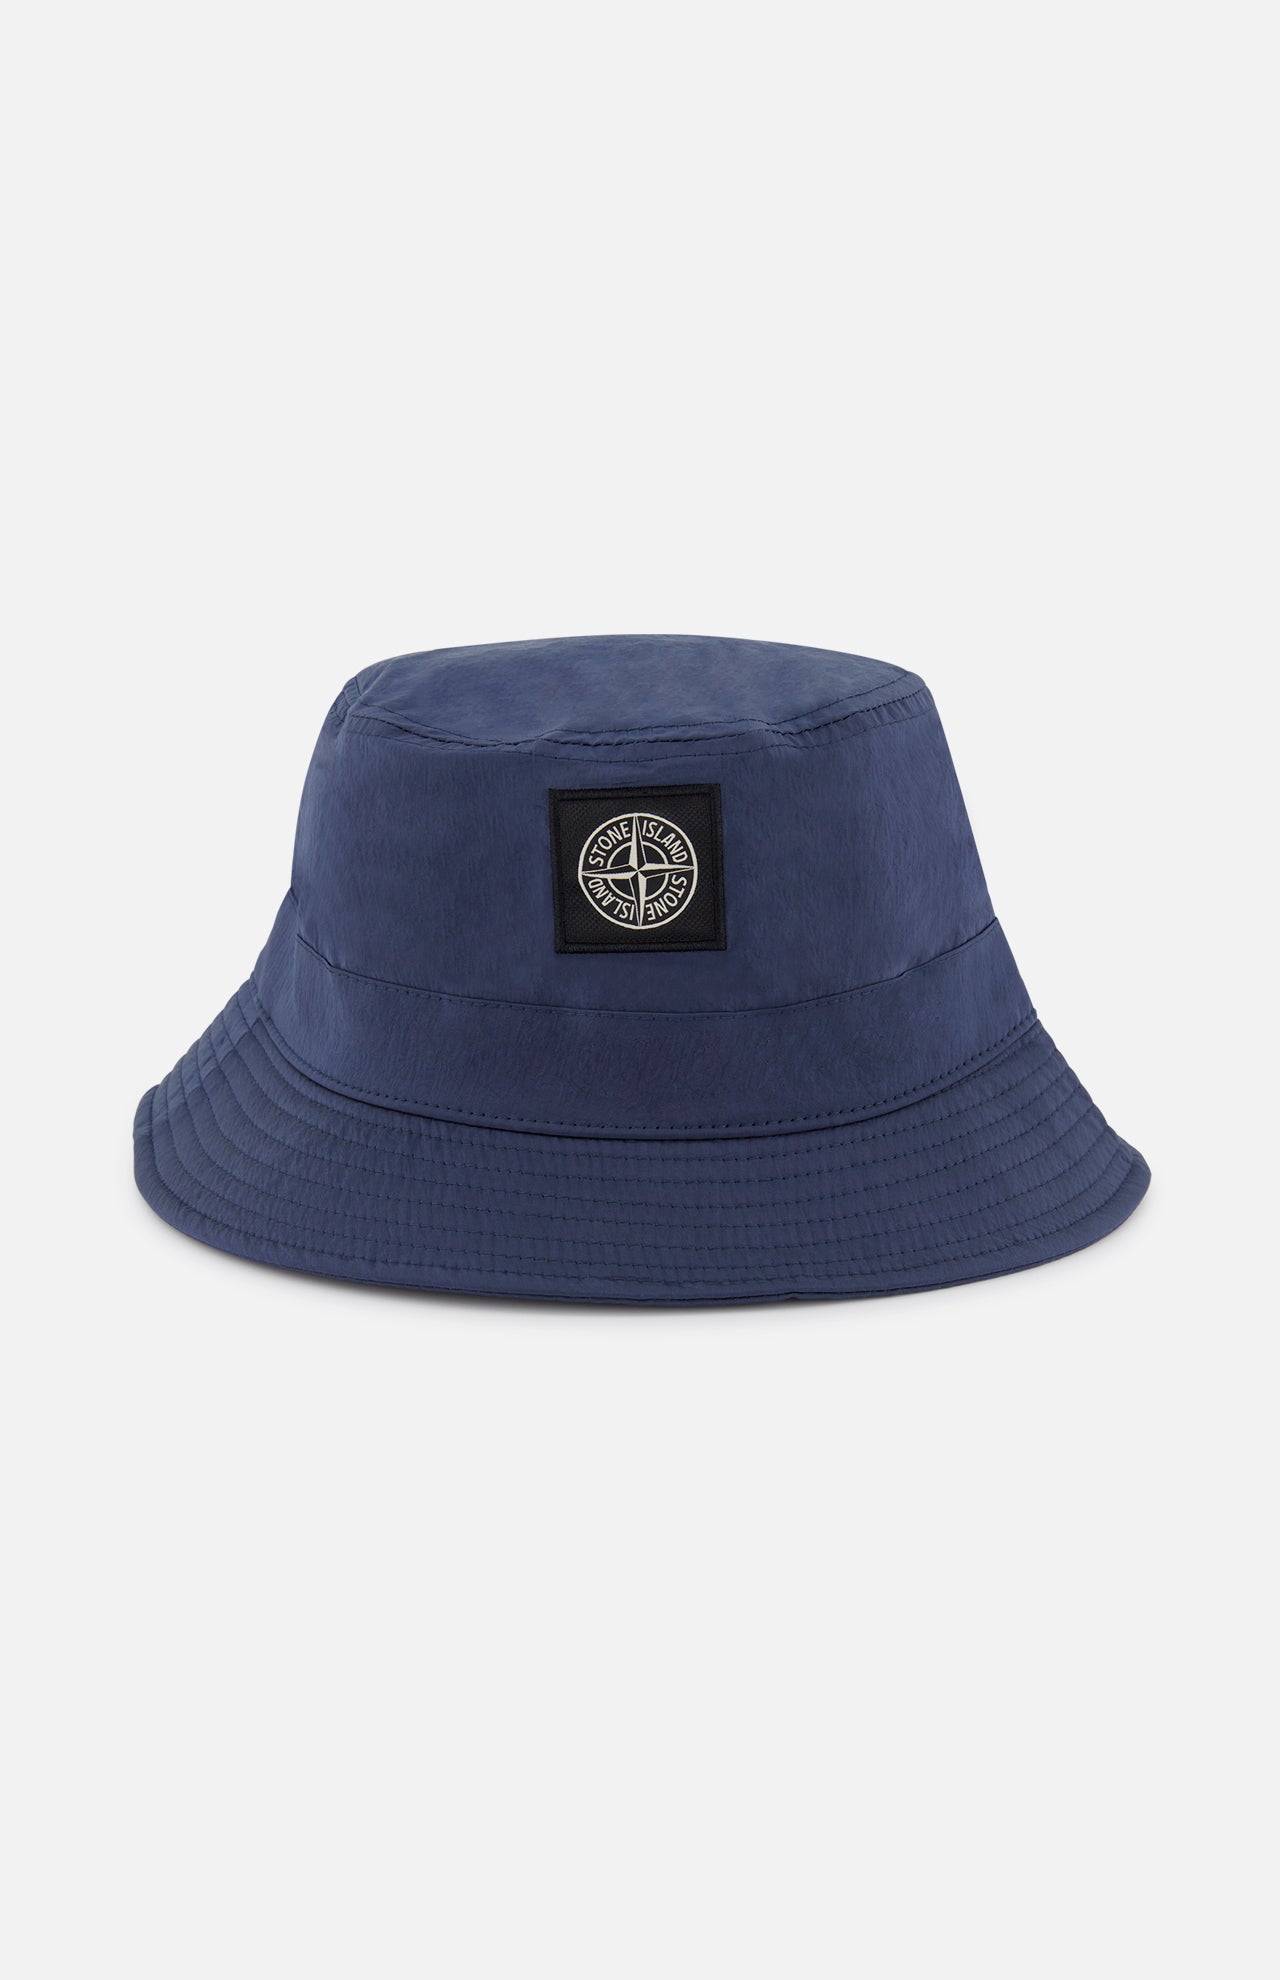 Stone Island Men's Bucket Hat | A.K. Rikk's